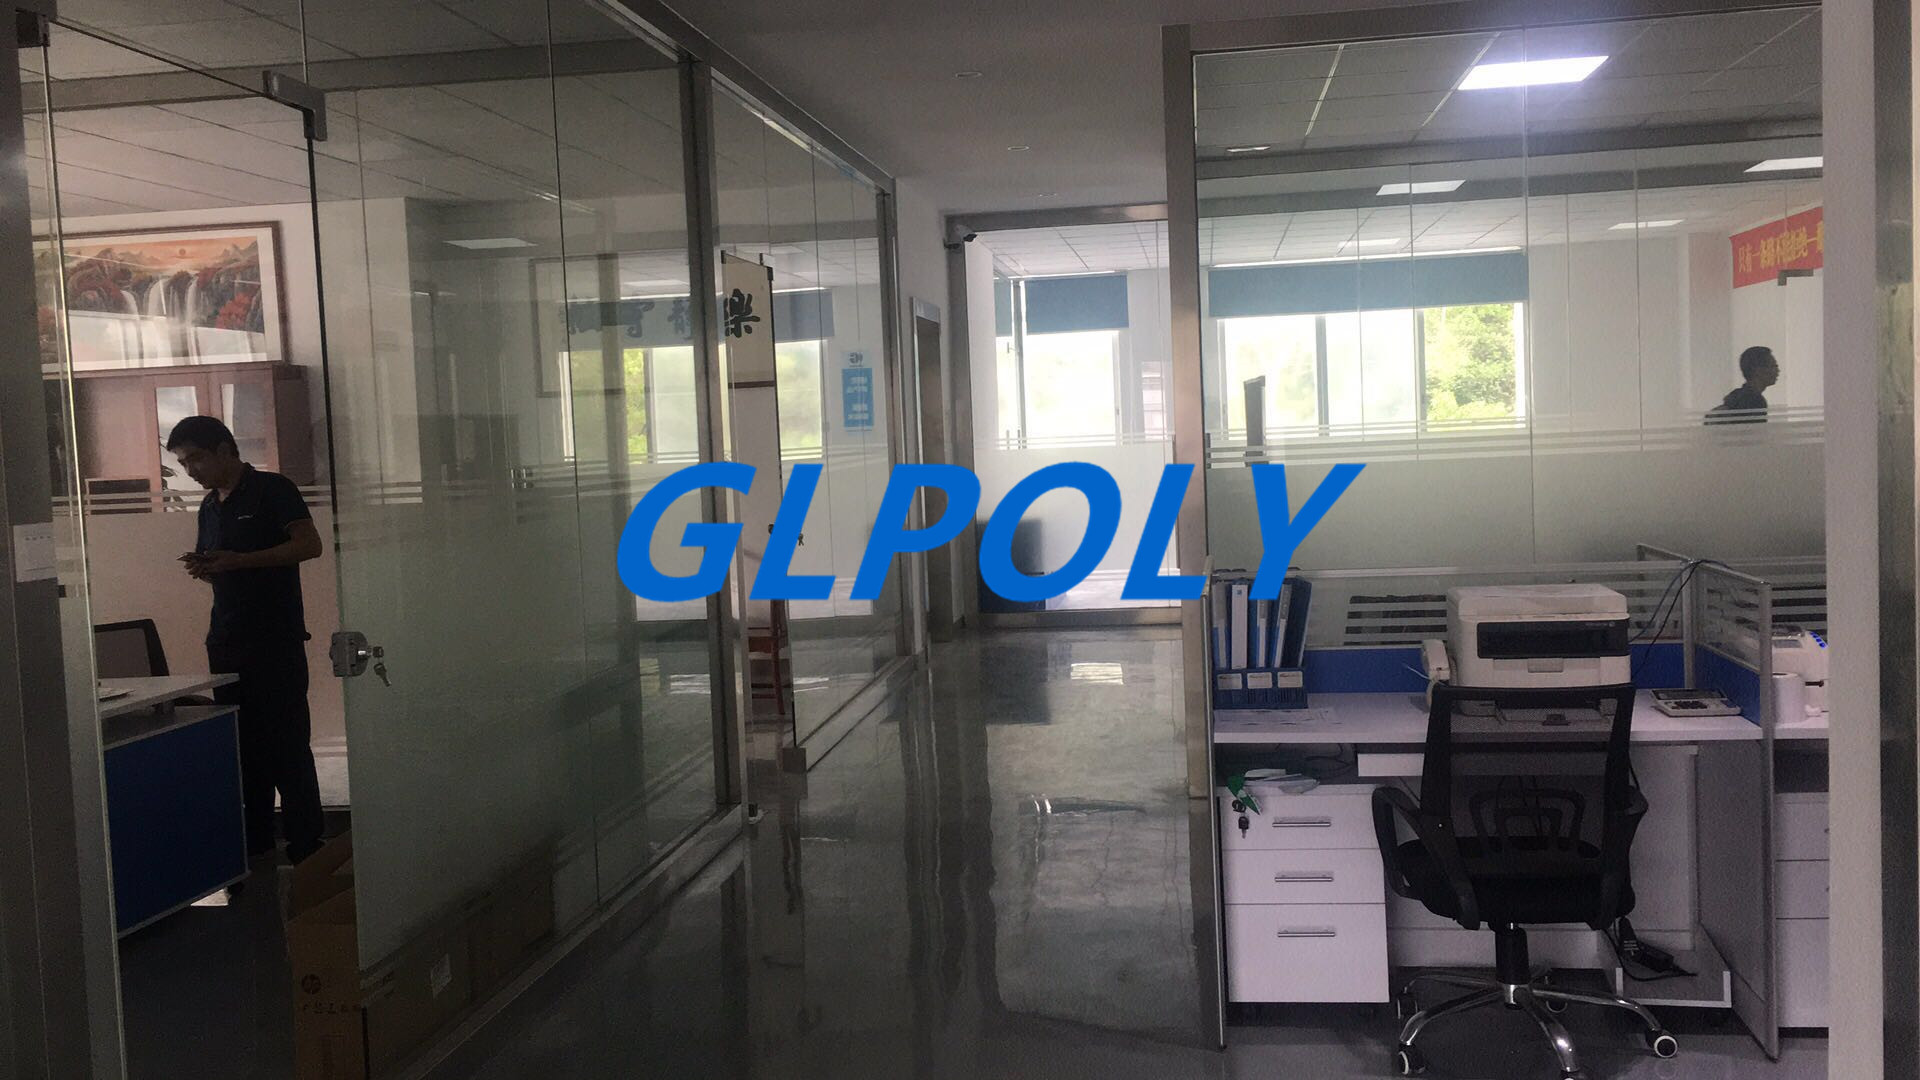 GLPOLY的发展除了战略和战术还有什么呢? 今天您如果想了解GLPOLY,或者随便搜索即带您进入打开GLPOLY的官网,便能带您快速了解她的发展历程, 走进GLPOLY第一眼就是能看到目标管理的相关条幅,为绩效而工作,为结果而管理,管理是让客户方便,而不是为了自己方便,预测自己的最好方式就是创造自己,为”小而精,精而美,美而优”而努力.为什么GLPOLY在公司成立之初就用目标管理办法,目标管理之所以能发挥作用,还在于它大大增强了下团队的责任感,而责任感又是一个巨大的激励因素,团队许多动力的行为来自于被强烈的责任感所驱使,要充分发挥团队实现目标过程的积极性,主动性,创造性,增强其责任感是一条重要的途径,人是有责任感的,只要环境适当,人不仅会承担责任而且还会追求责任,很多研究结果表明, 最有效的手段是在实现目标过程中实行。自我控制 式管理有利于下属责任感增强， 进而促使团队积极性、 主动性， 创造性的充分发挥。所以， 增强责任感是自我控制" 的一种延伸结果,现实管理实践中的 目标管理 ,自我控制" 式的管理.其次是目标,目标为所有的管理决策指明了方向， 并且作为标准可用来衡量实际的绩效,其直接的作用主要体现在对管理过程的控制环节, 但是, 作为活动的预期目的和结果， 目标对管理的重要作用又不局限于此， 它可以对人产生巨大的激励作用， 这种作用将贯穿于整个管理环节， 使得管理活动获得最佳效益。 目标的激励作用主要表现也有几个方面: 一是在目标确定后呢， 它能使人明确方向看到前景,因而能起到鼓舞人心、 振奋精神和激发斗志的作用; 二是在目标执行过程中， 由于目标的制定都具有一定的先进性和挑战性的， 在实际工作中必须通过一定的努力才能达到的， 因而有利于激发人们的积极性和创造; 三是在目标实现以后， 由于人们的愿望和追求得到了实现， 同时也看到了自己的预期结果和工作成绩， 因而在心理上会产生一种满足感和自豪感， 这样就会激励人们以更大的热情和信心去承担新的任务以达到新的目标。GLPOLY就是一家这样的公司,以目标而管理的公司,销售团队是由一批很有活力且有互联网思维的90后团队打造,GLPOLY总经理康美宇先生非常关心他们的成长，以责任鼓励创新为出发点，鼓励他们大胆的去做，鼓励把他们的想法变成现实，不断的迭代优化，通过这样一个方式鼓励他们大胆的创造,鼓励他们勇敢的”走”出去 ,而且是思维,胆识,眼界真正的走出去跟更高层接轨. ,小编也是最喜欢那些善良有力的队友们.此刻,GLPOLY有的同事还在外面解决客户的问题,有的同事还在写着明天计划, 1．明天的目标是什么呢？ 2．明天要怎么安排时间呢? 3．明天最重要的三件事是什么呢？ 4．明天准备学哪些新东西？ 5．明天准备在哪方面进步一点点？ 6．明天如何使自己活得更健康、更开心？ 7．今天又是否完成了目标？  GLPOLY的团队每天是这么工作的,所以快速发展是必然的吧,最后再以目标管理的一句话以”为努力的自己加油”结束今天的分享.